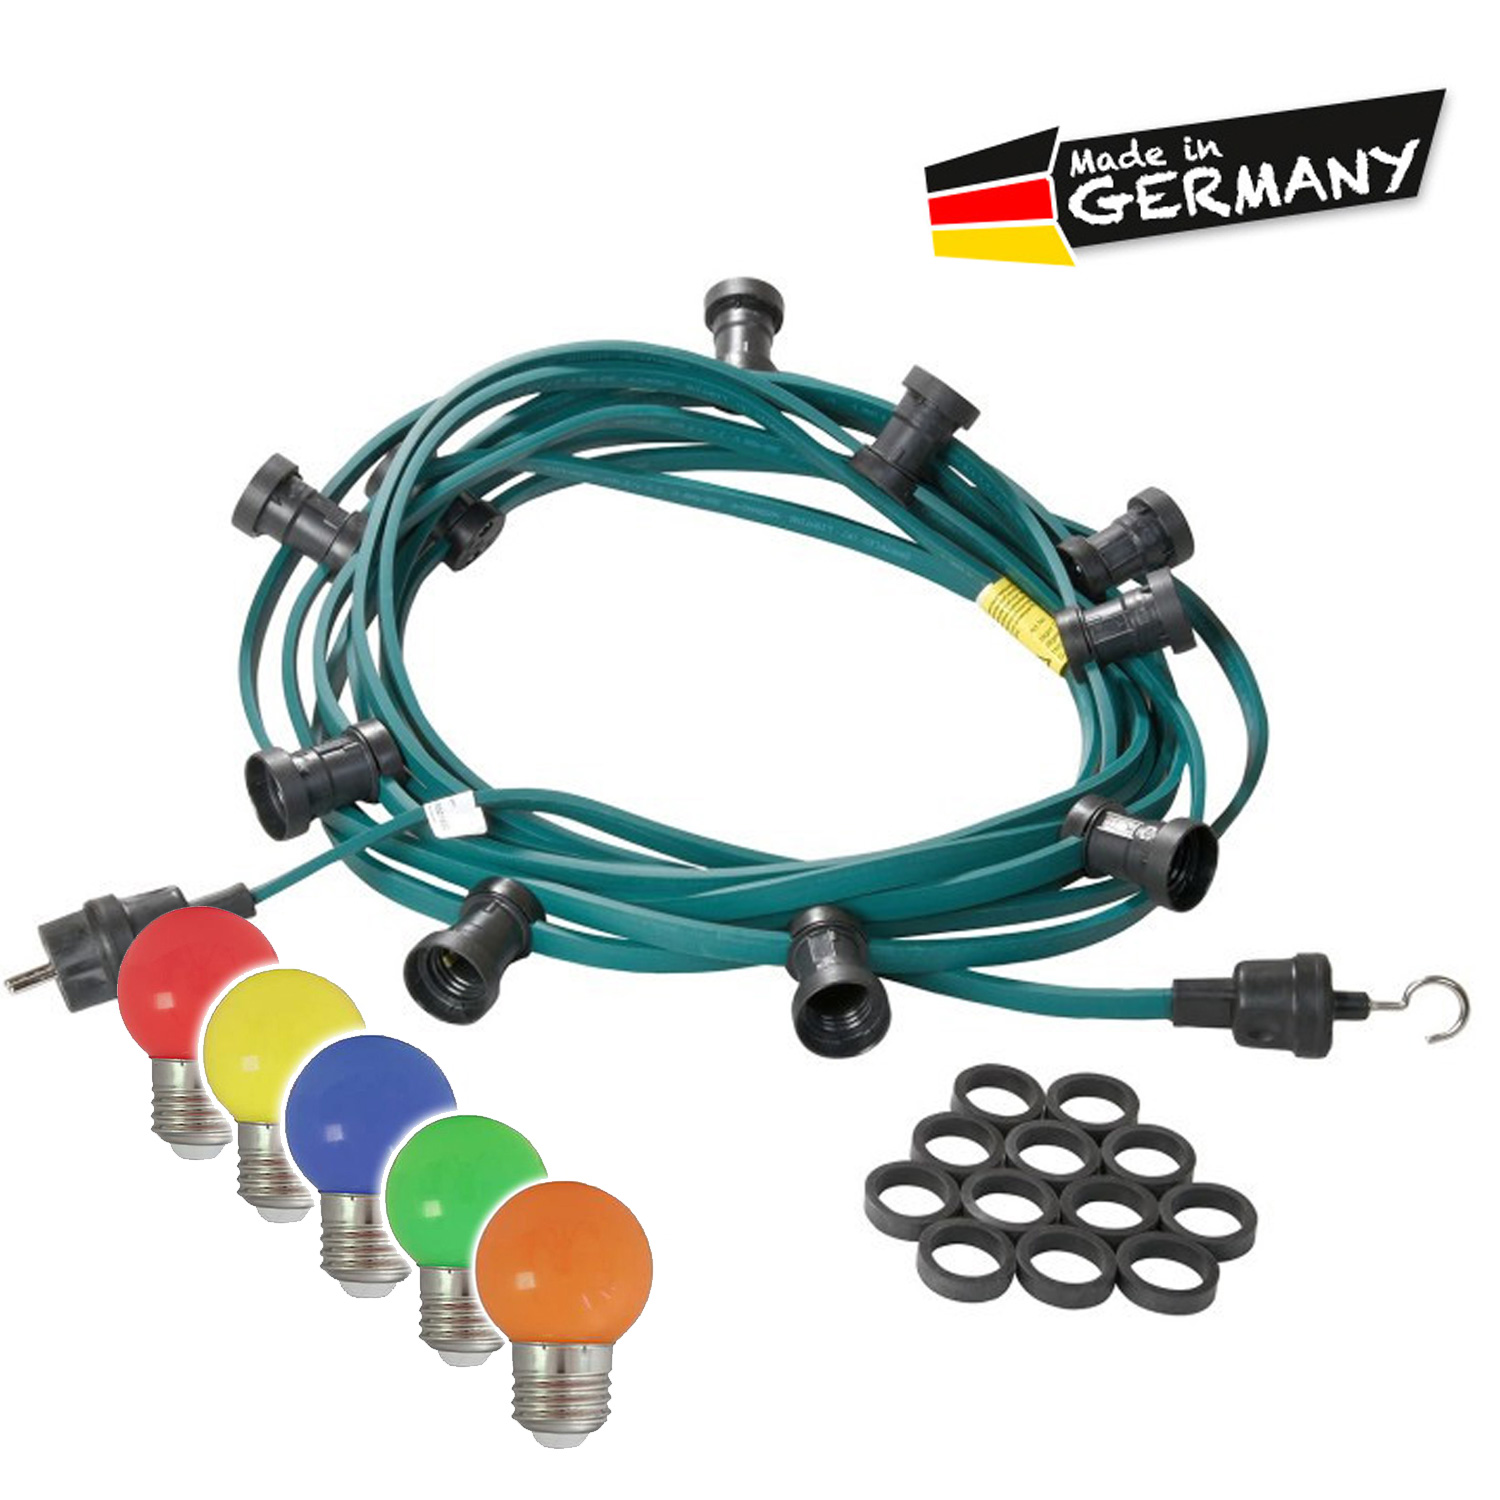 Illu-/Partylichterkette grün 20m - Außenlichterkette - Made in Germany - 30 x bunte LED Kugellampen